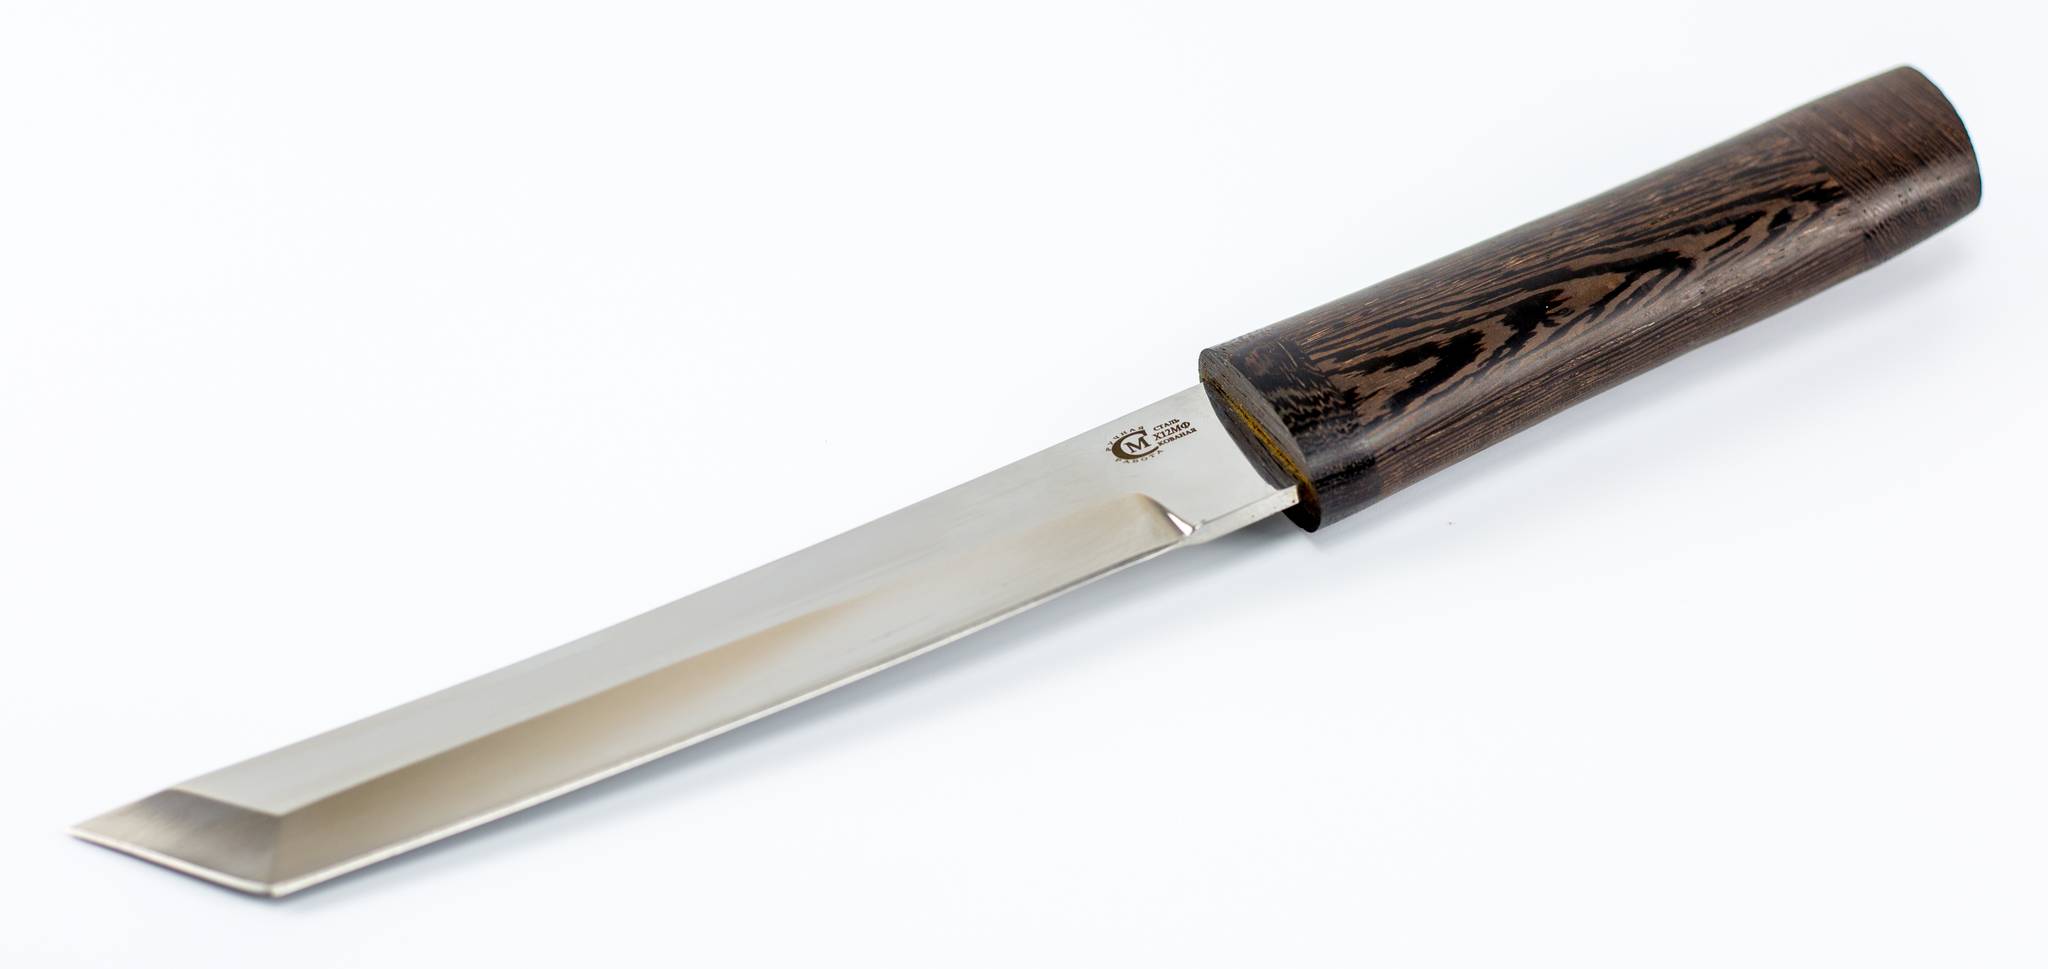 Японский нож танто своими руками чертежи. небольшой нож танто своими руками